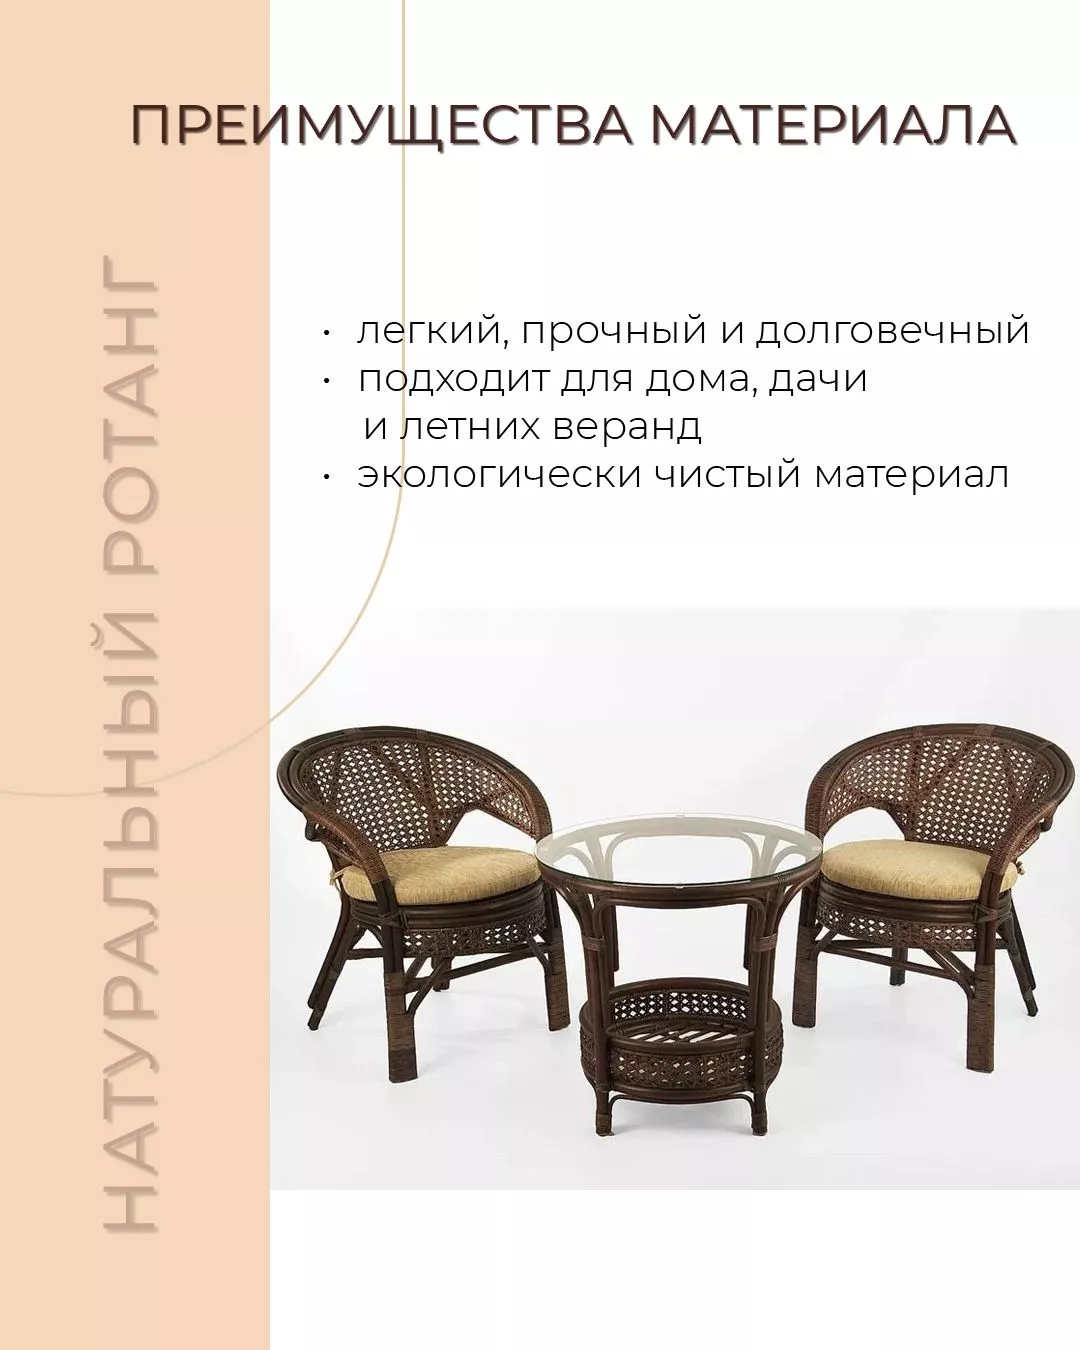 Комплект мебели из ротанга Пеланги 02 15 дуэт с круглым столом орех матовый